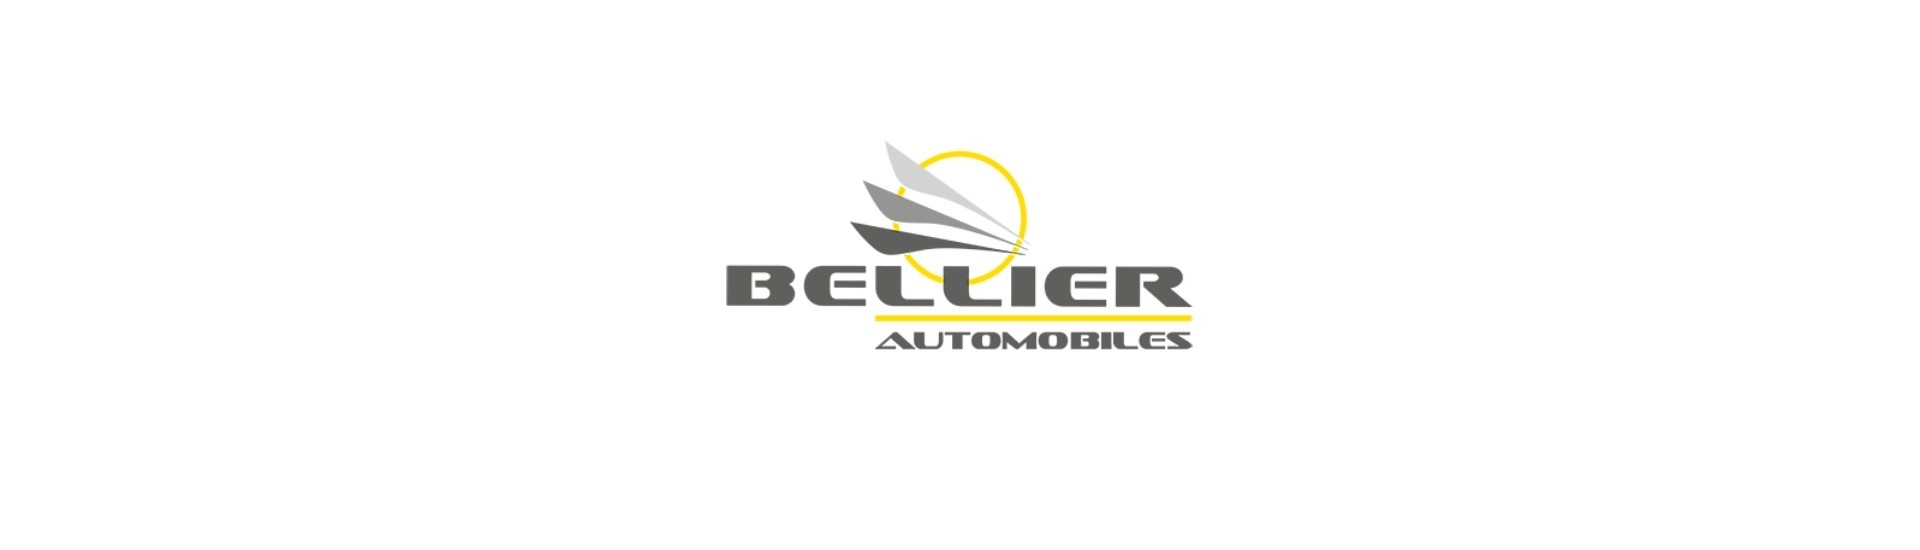 Motor do limpador de gelo ao melhor preço carro sem licença Bellier